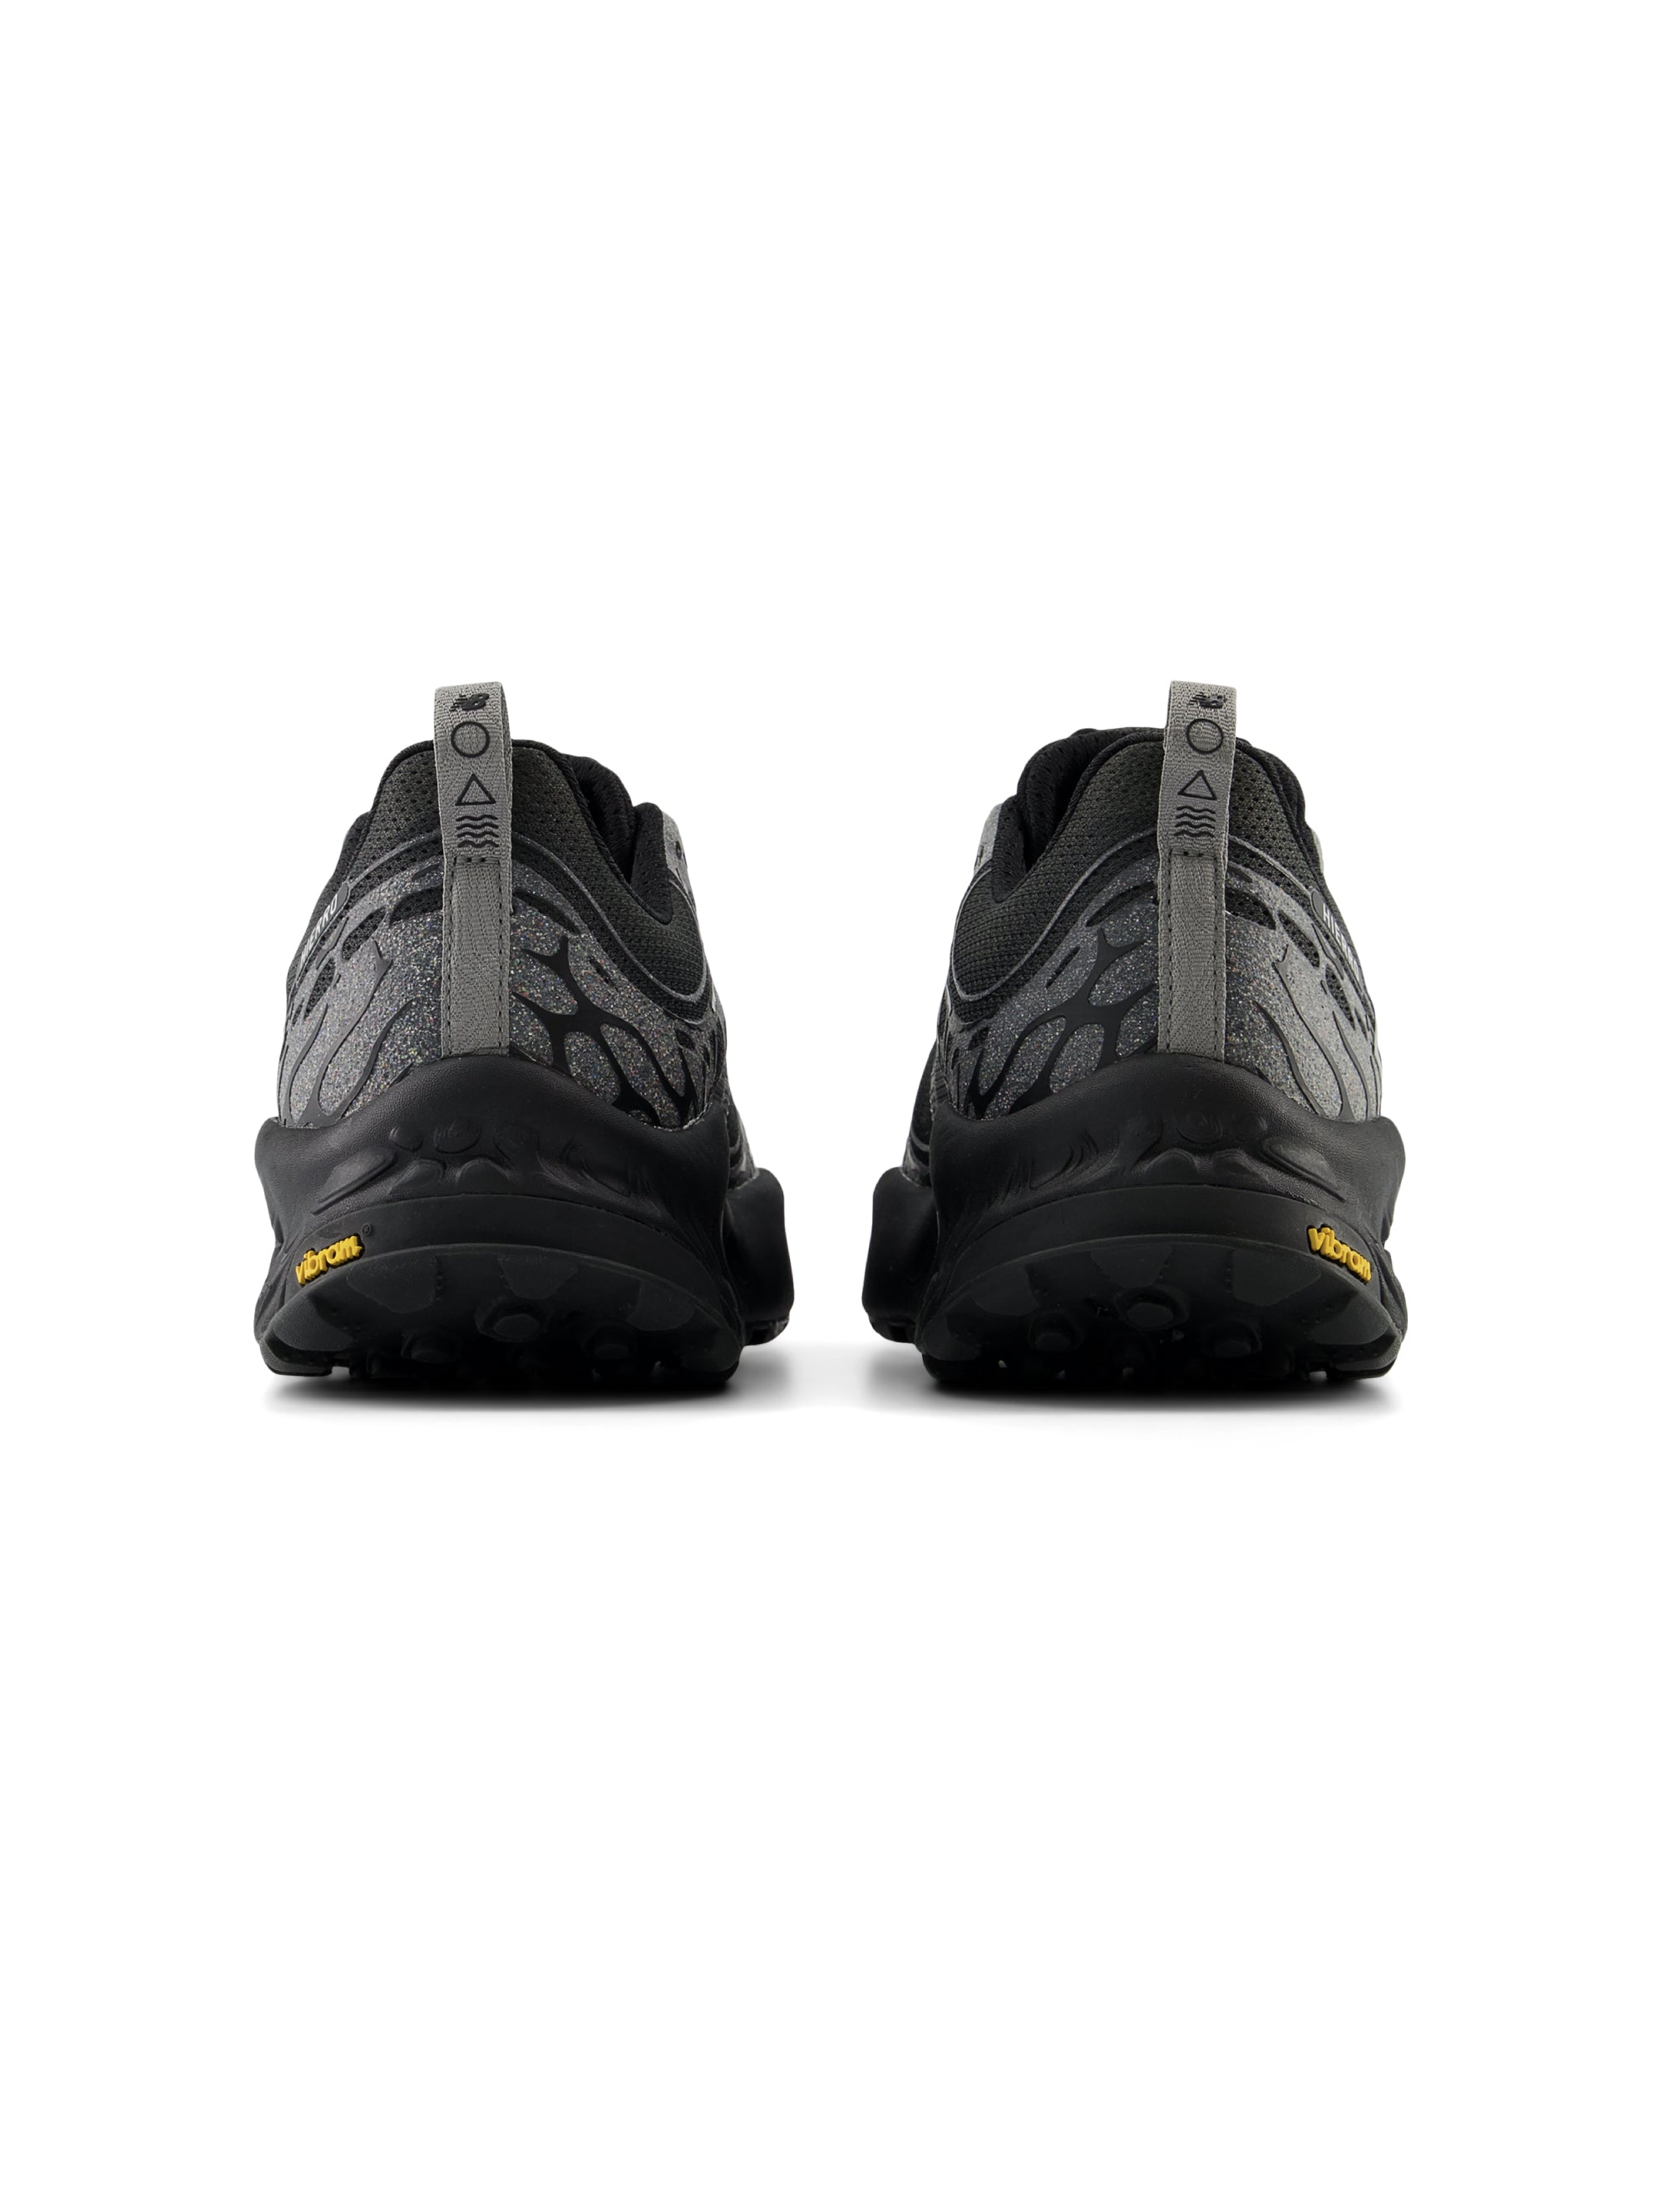 Hierro V8 Fresh Foam X Men's Sneakers Black